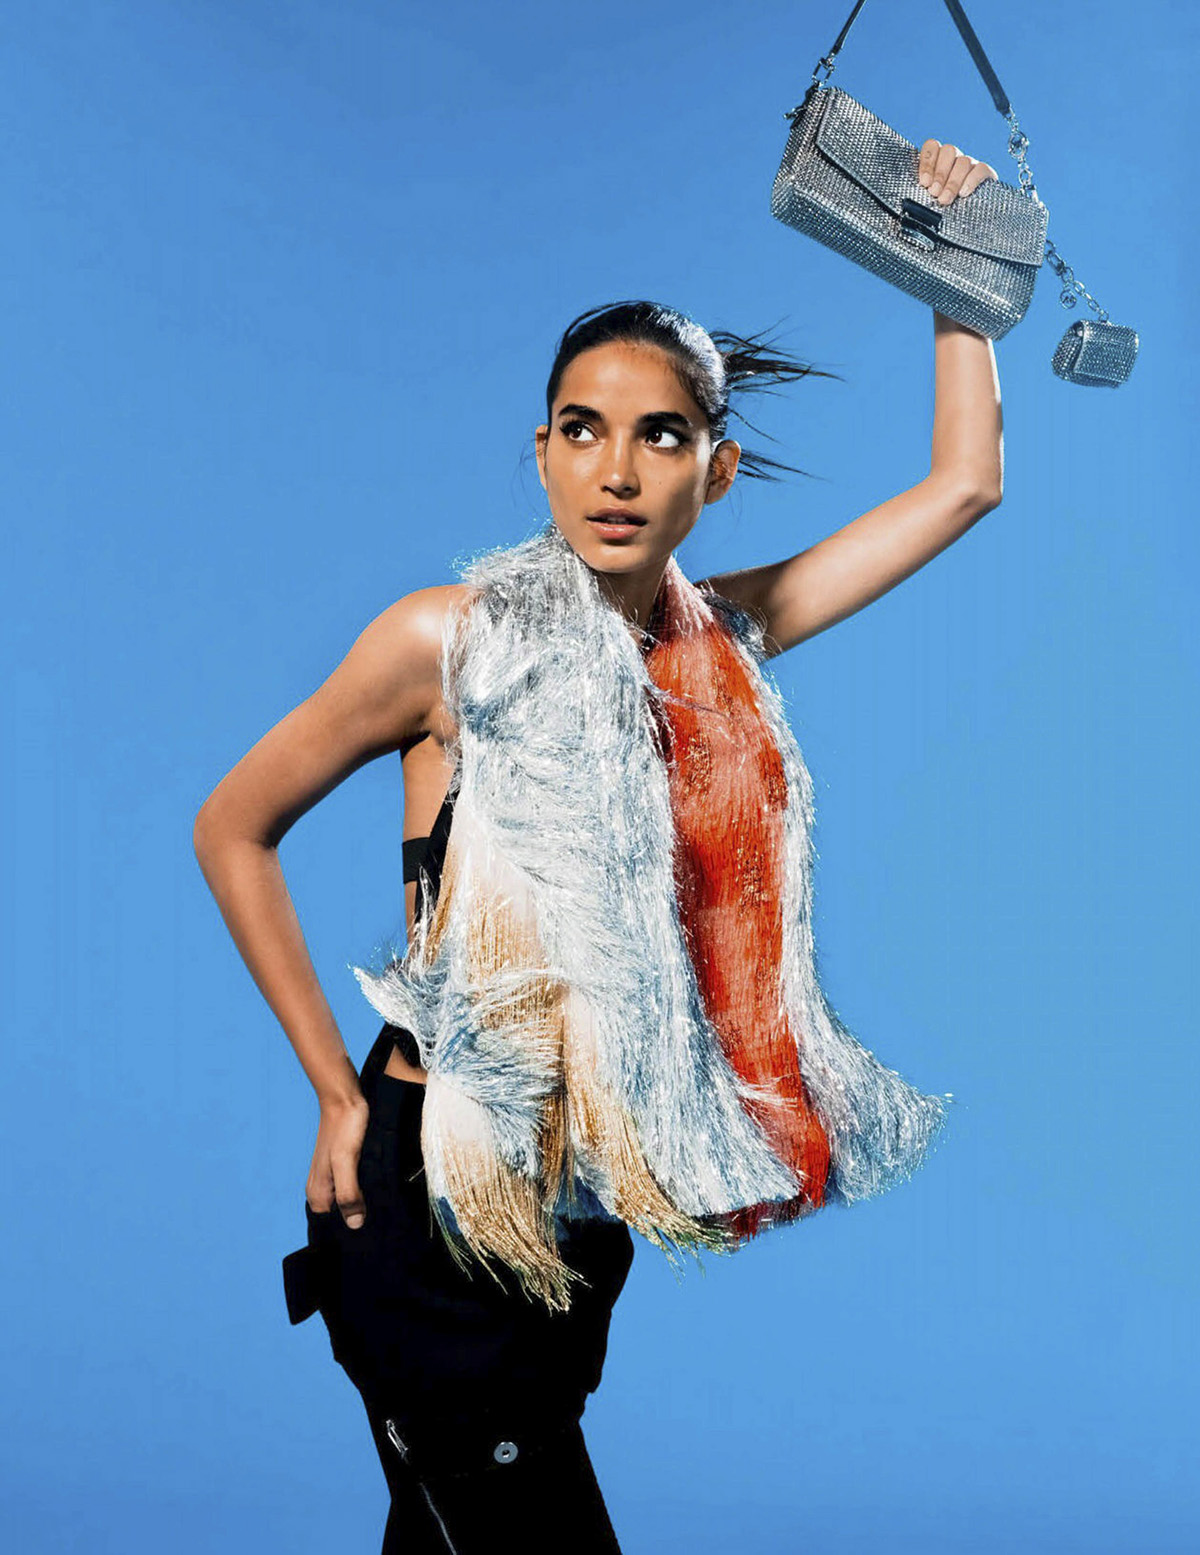 Amrit by Cruz Valdez for Vogue India December 2021